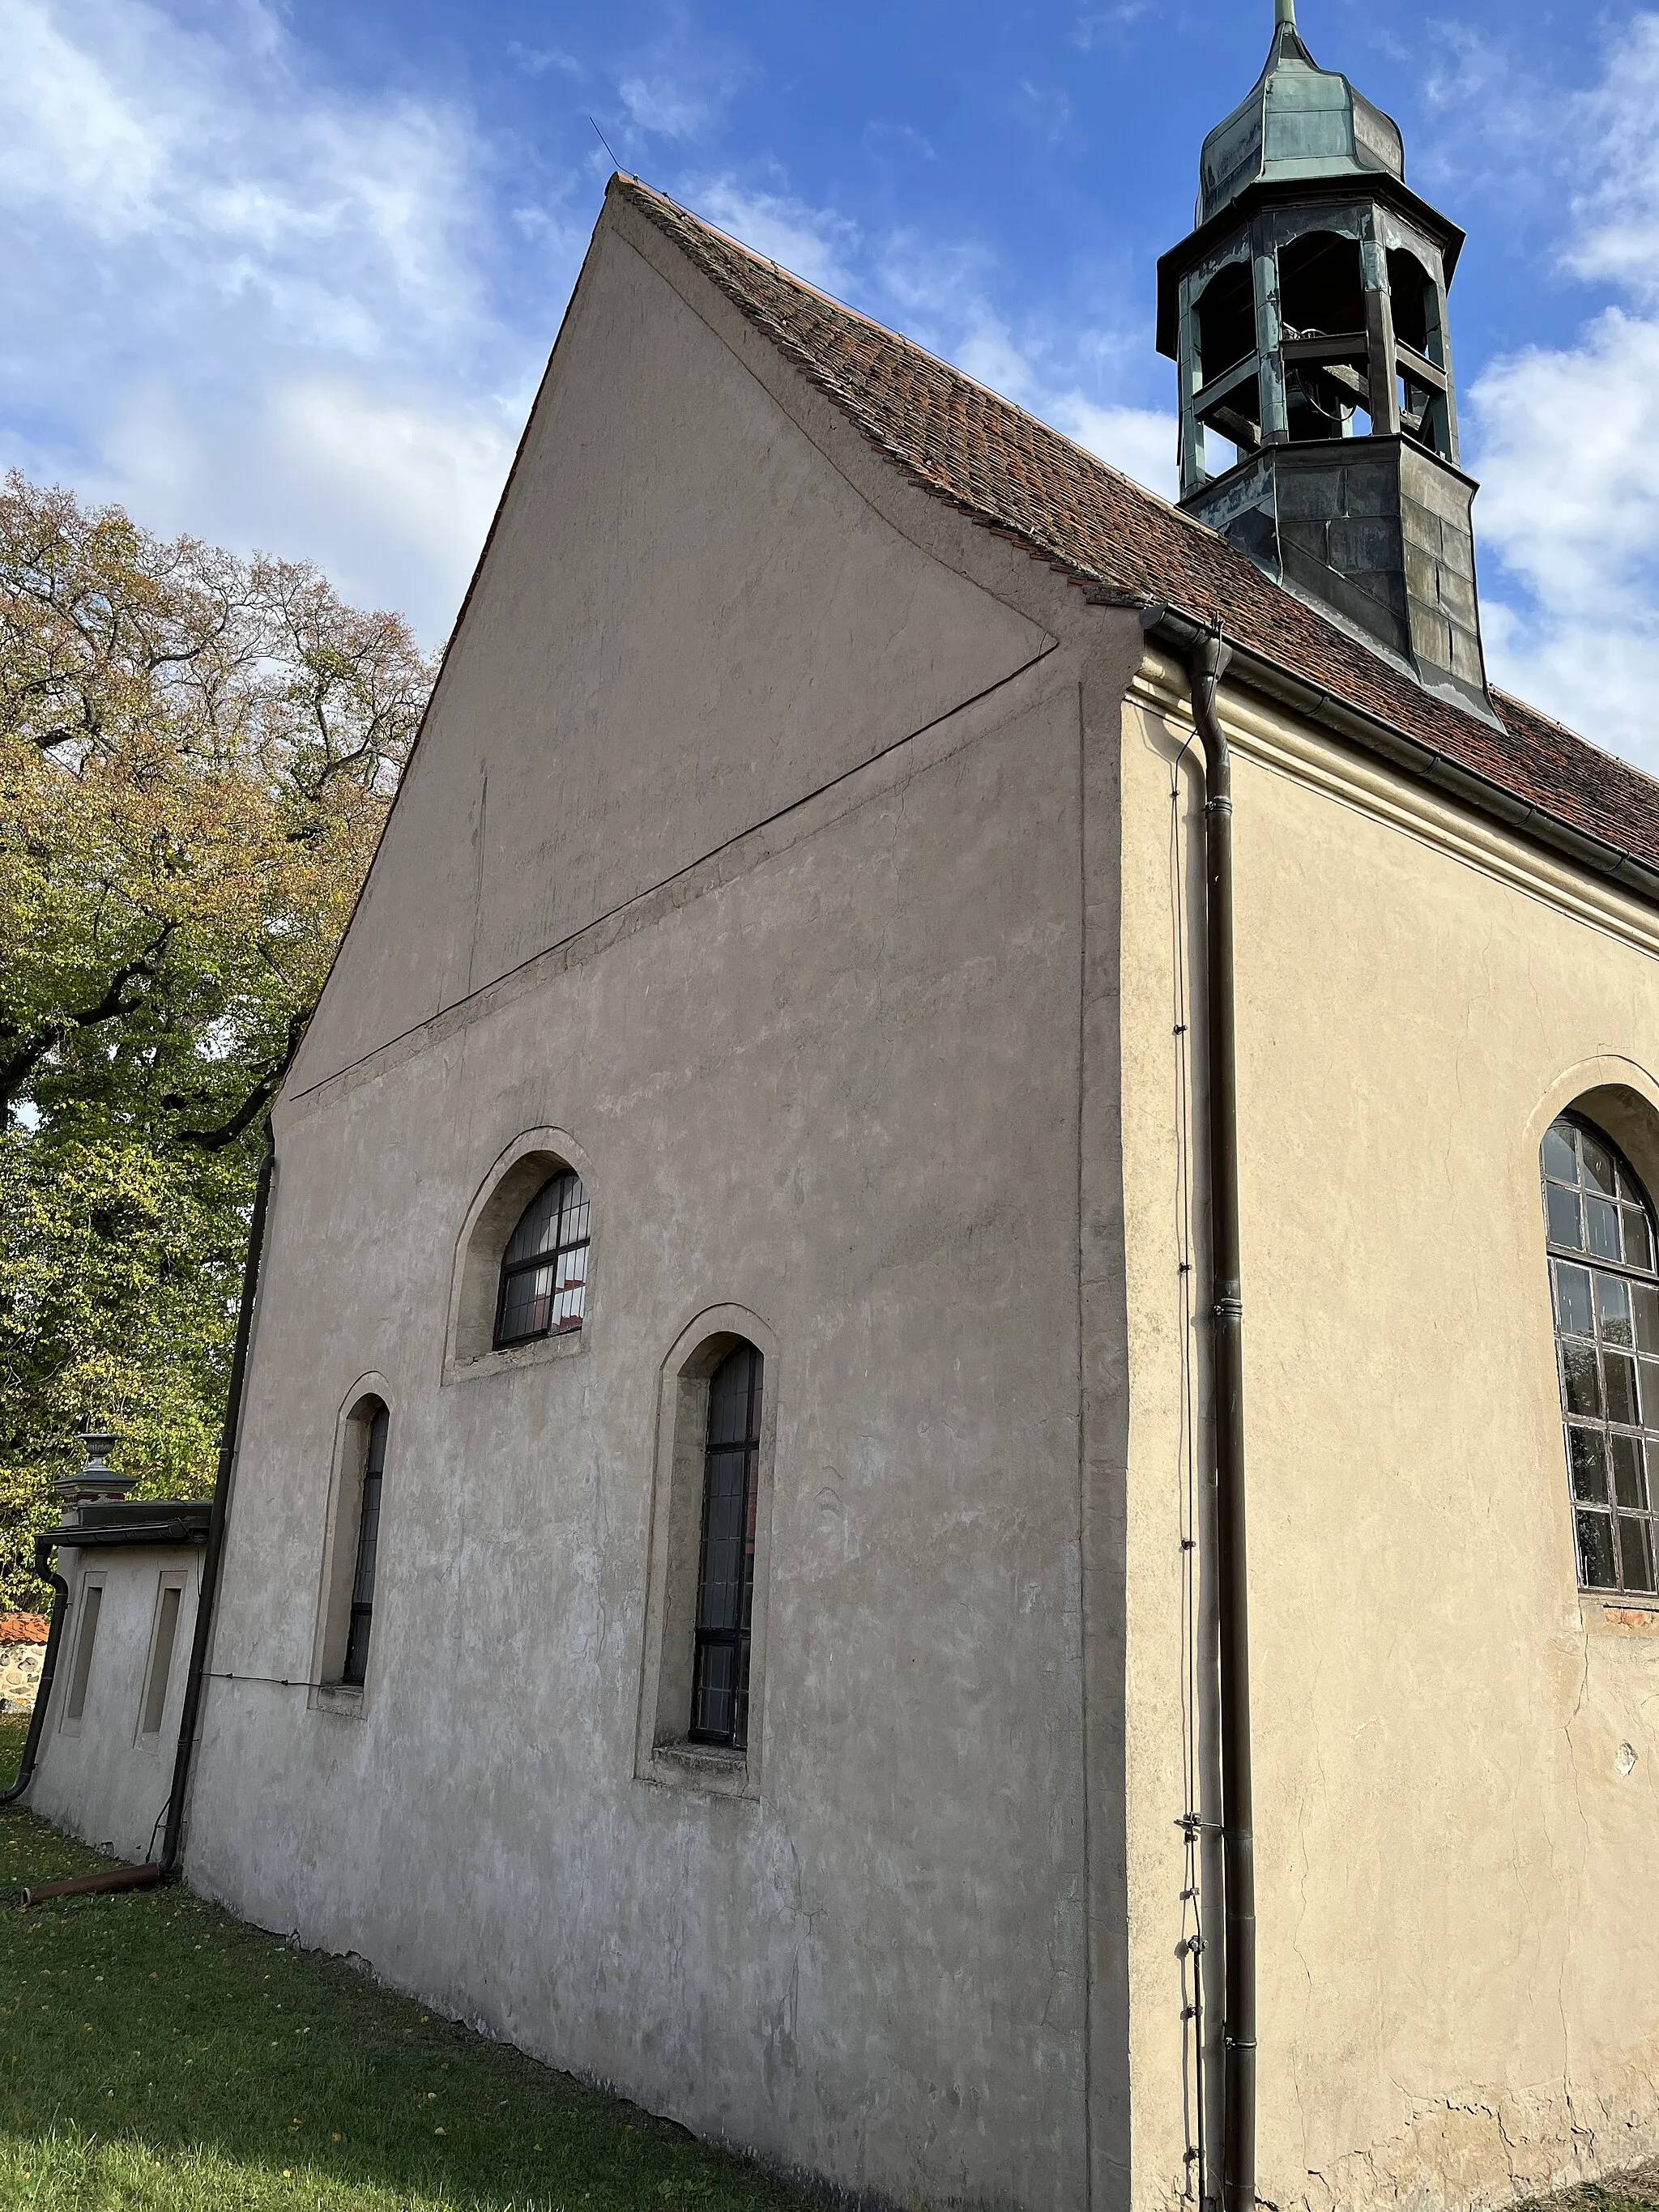 Photo showing: Die Dorfkirche Klein Glien ist ein Putzbau aus dem Jahr 1665 in Klein Glien, einem Gemeindeteil der Stadt Bad Belzig im Landkreis Potsdam-Mittelmark in Brandenburg. Im Innern steht unter anderem eine hölzerne Kanzel aus der 2. Hälfte des 17. Jahrhunderts.